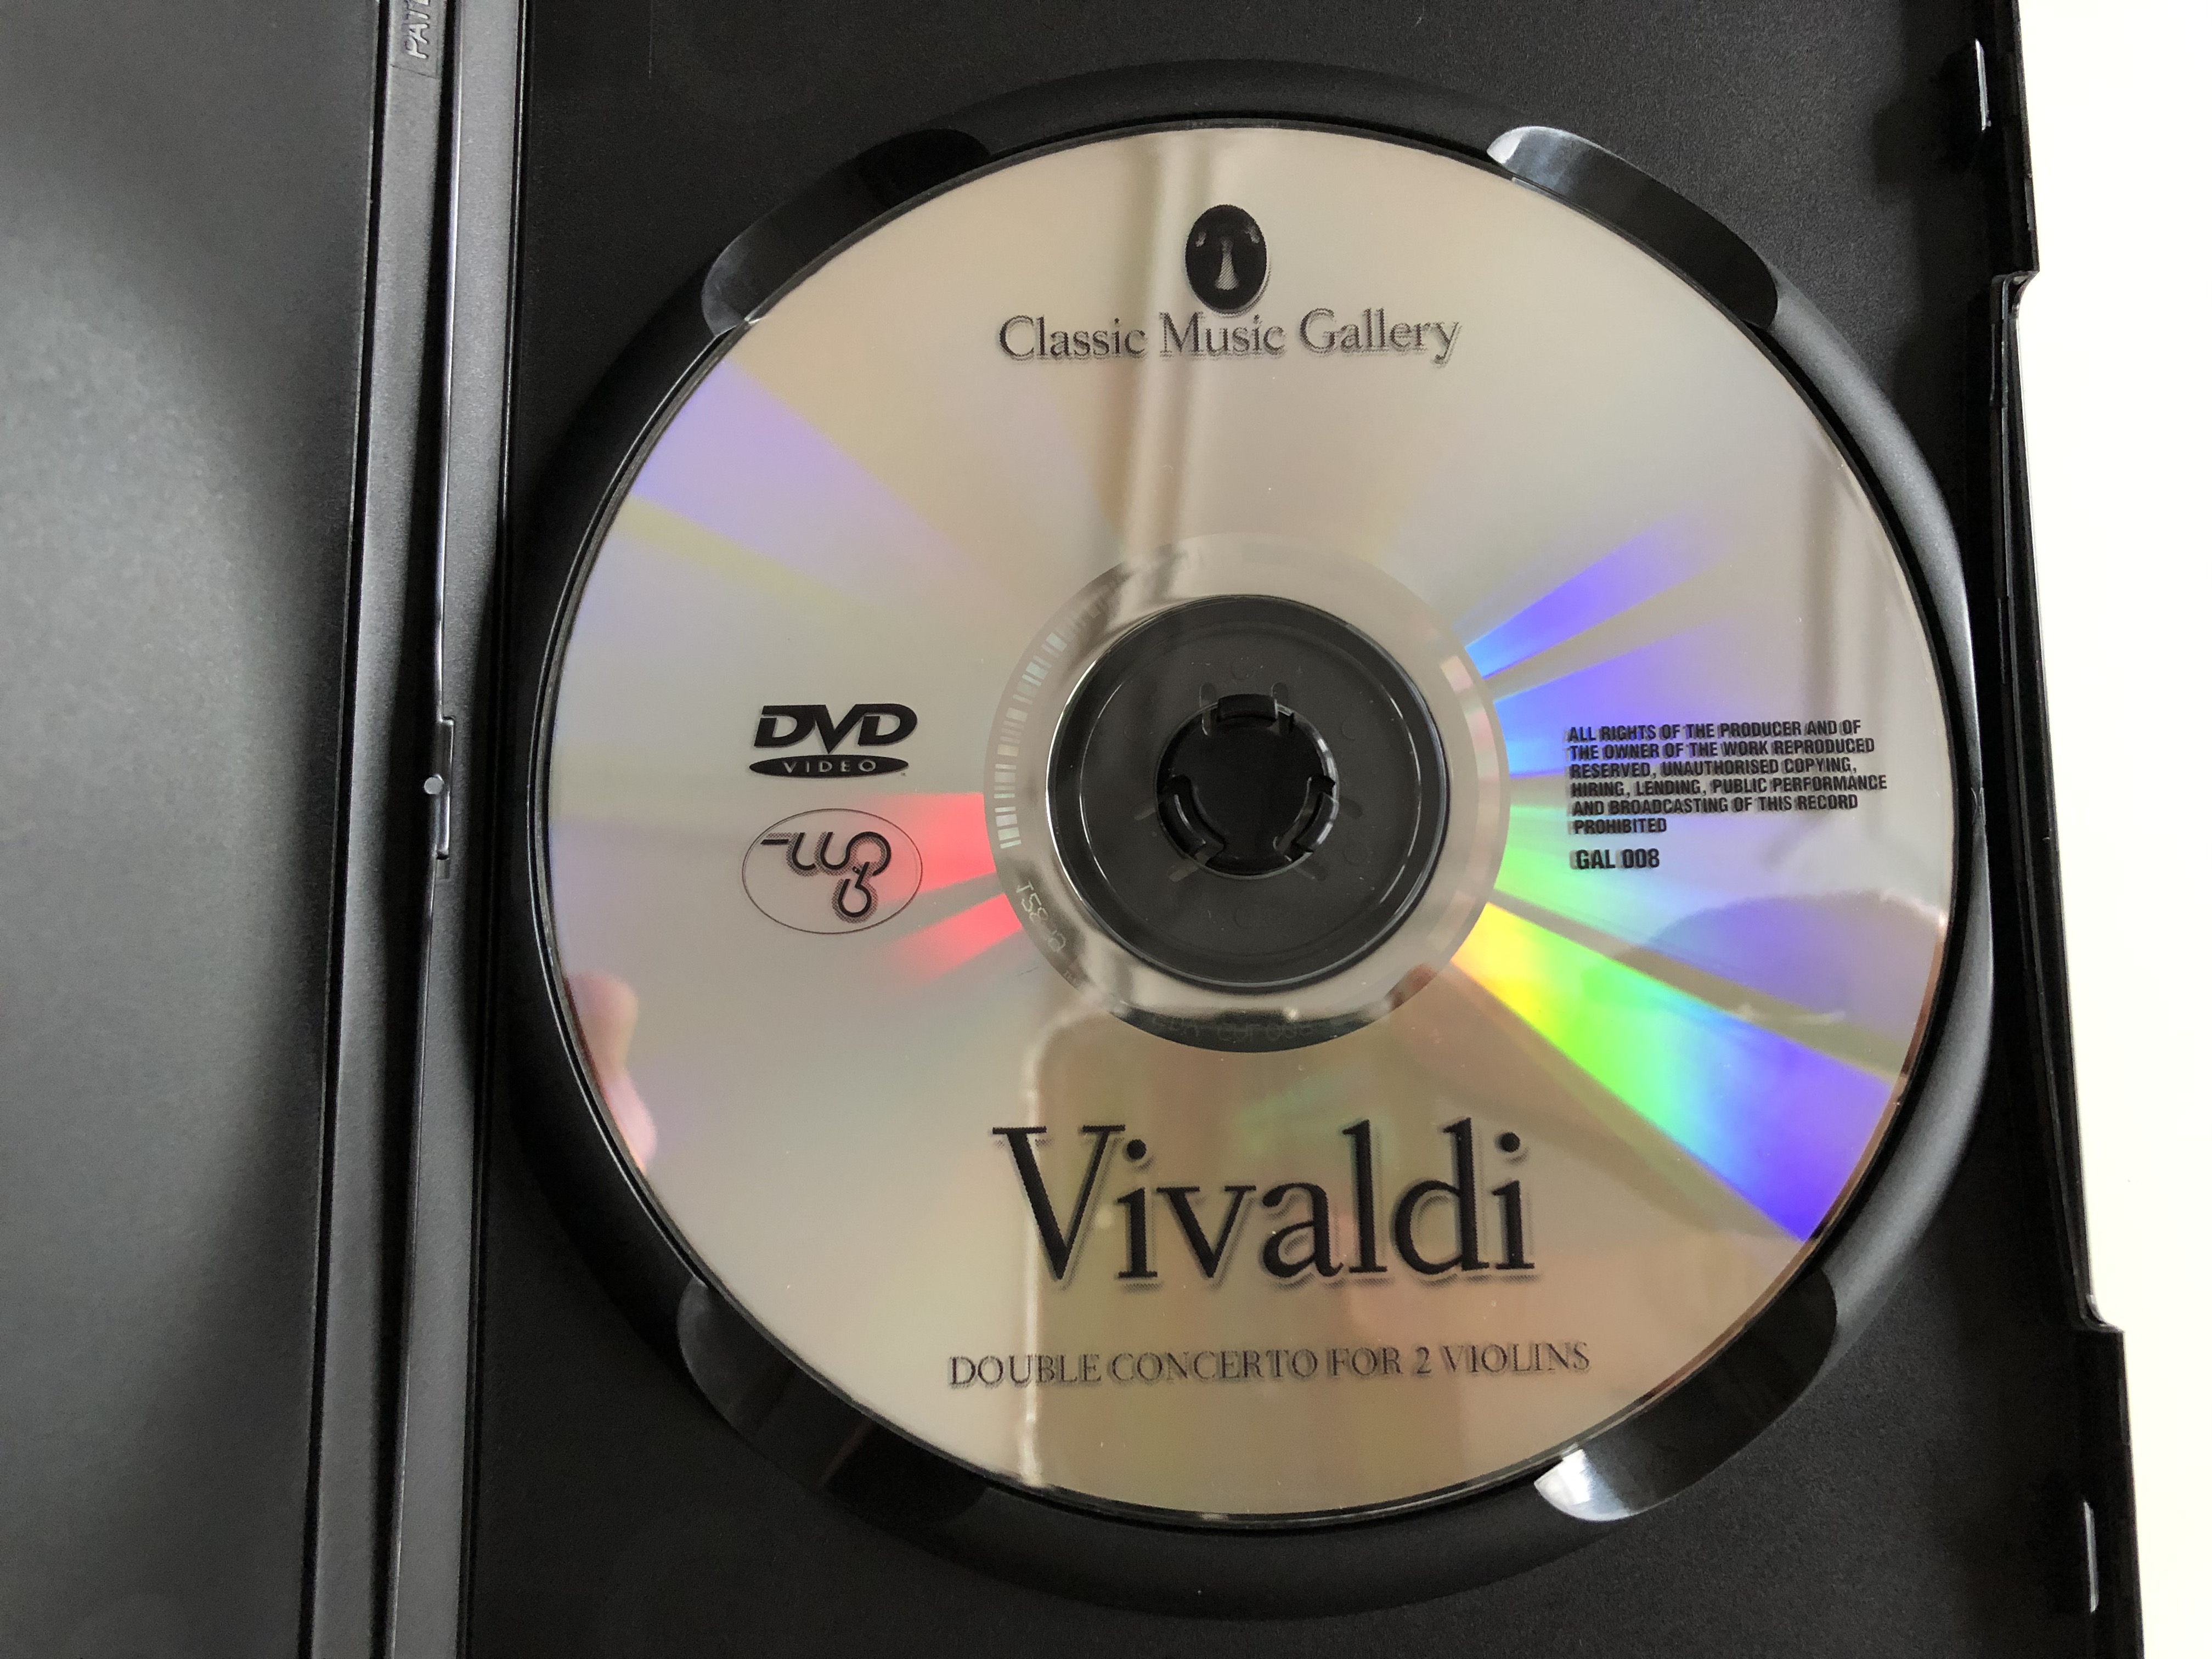 vivaldi-double-concerto-for-2-violins-dvd-2003-chamber-orchestra-von-der-goltz-2.jpg